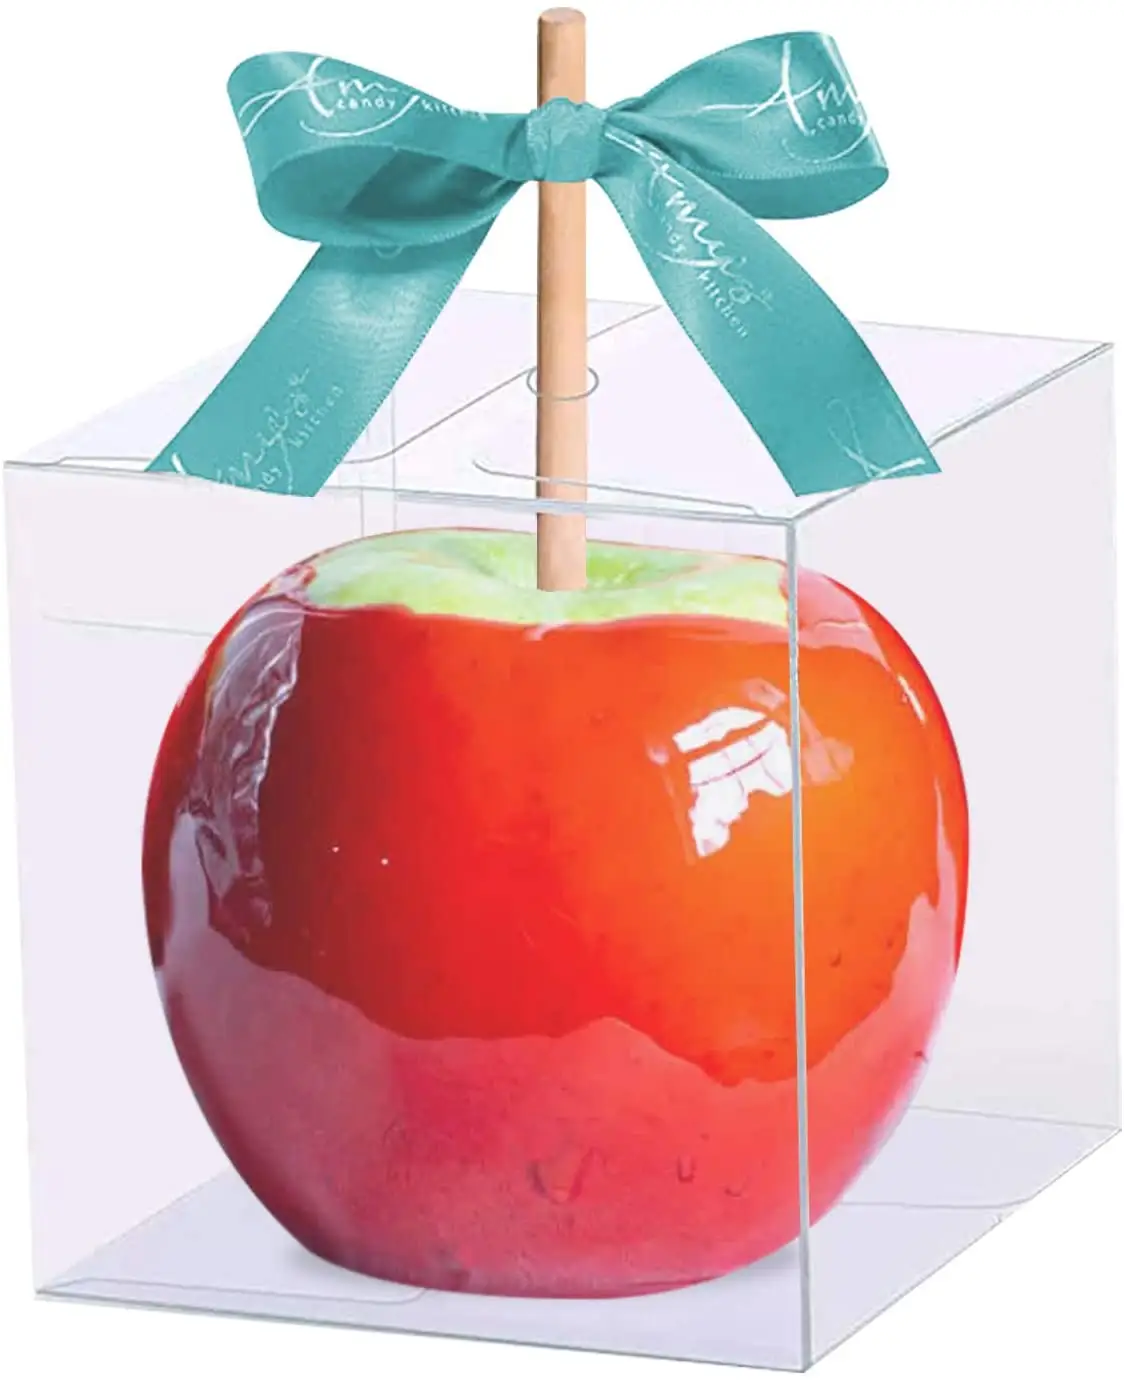 סיטונאי 4 "x 4" x 4 "PET ברור קופסות מתנת קרמל תפוחים שקוף קופסות פלסטיק סוכריות קופסות עם חור למעלה